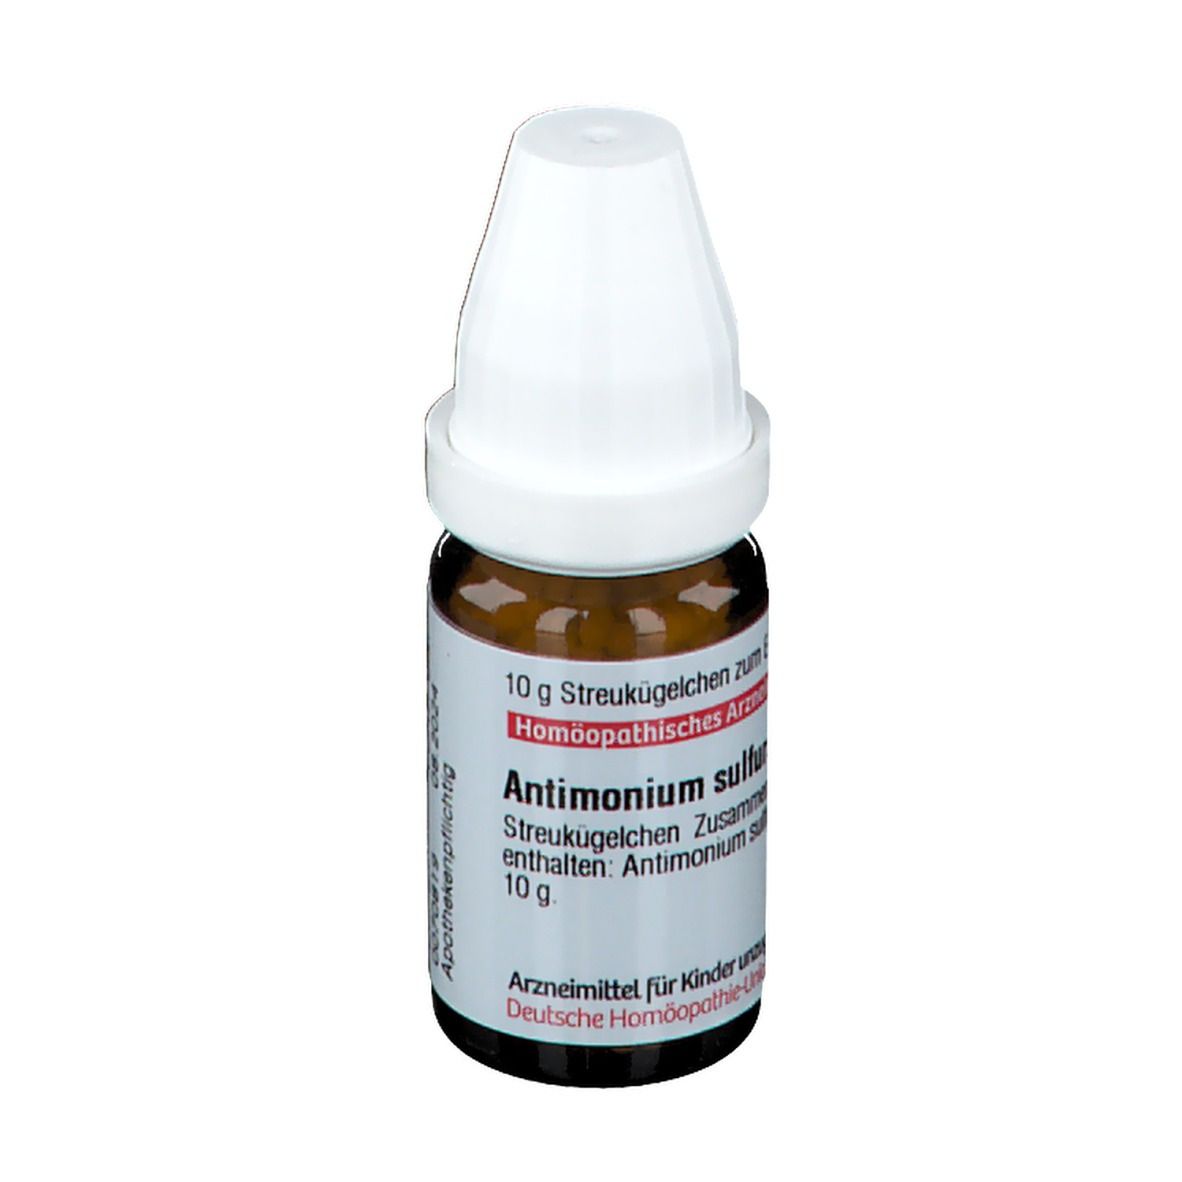 DHU Antimonium Sulfuratum Aurantiacum C30